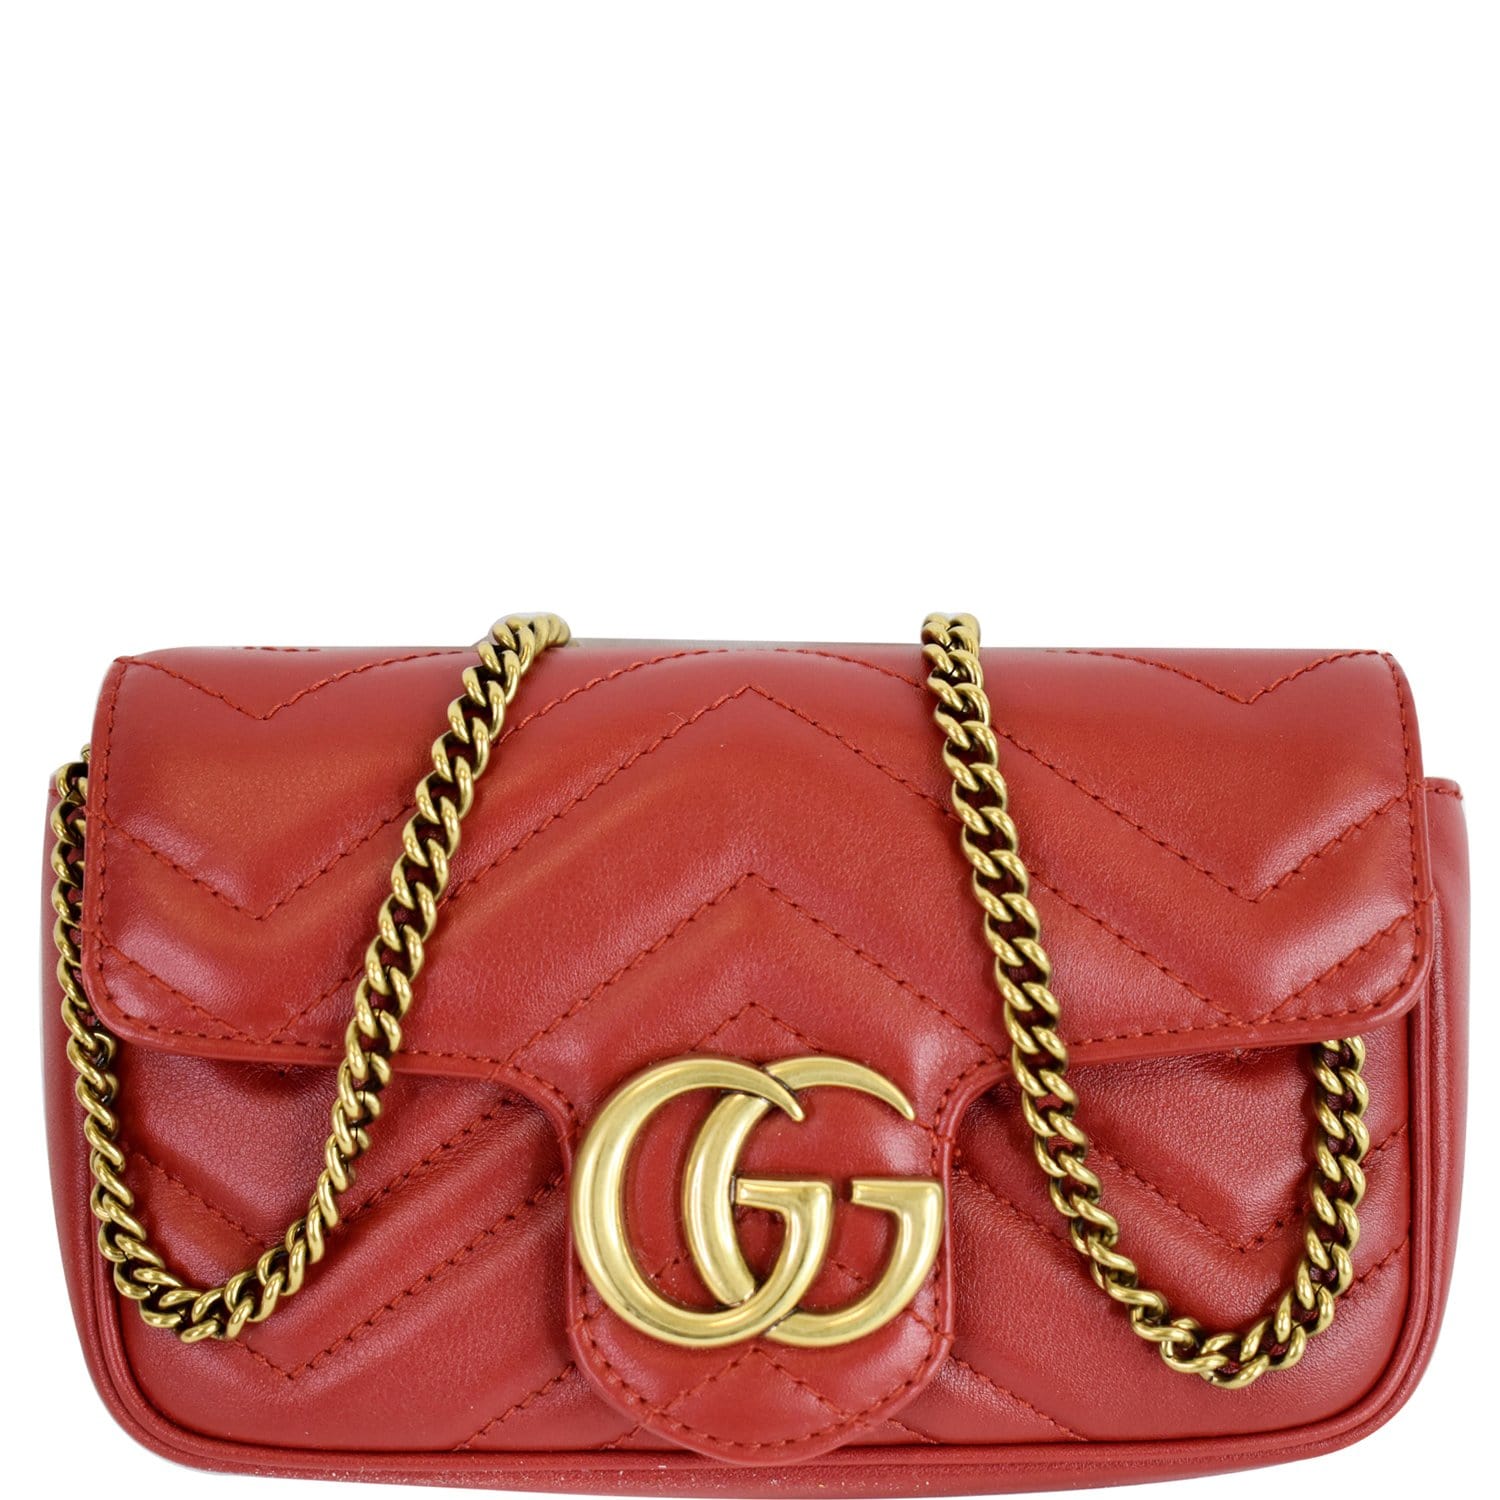 Gucci GG Marmont Super Mini shoulder bag